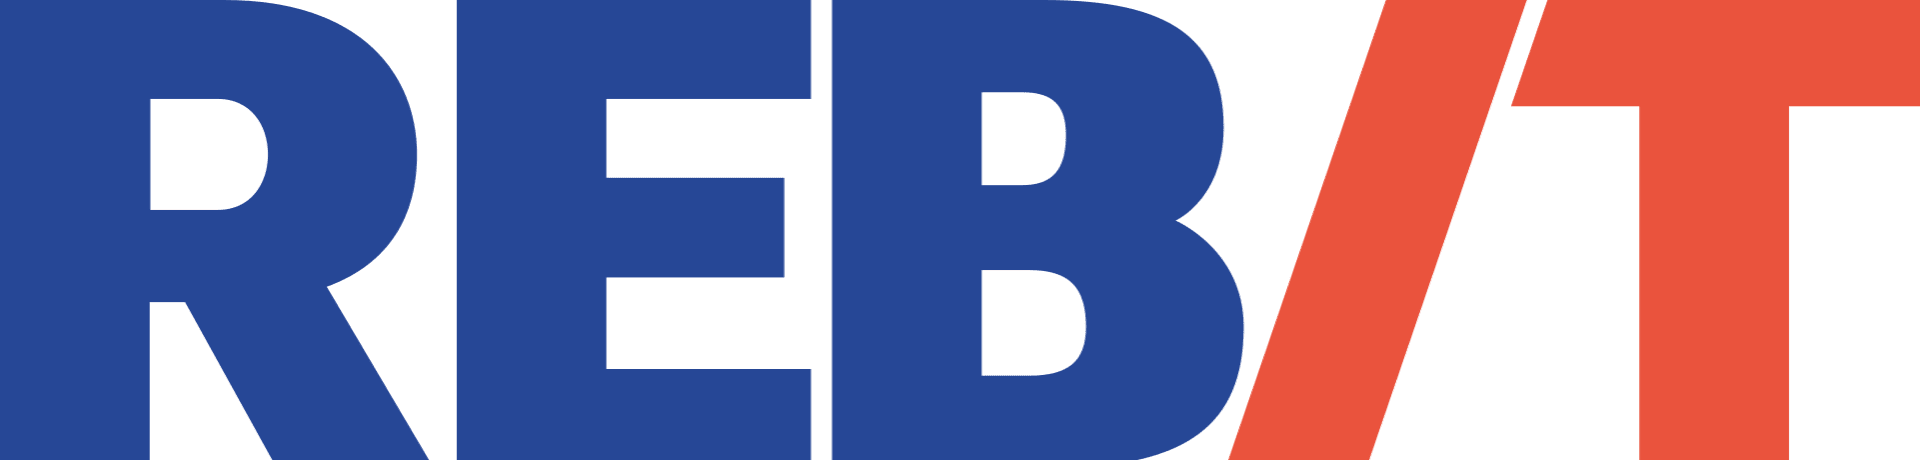 REBIT logo